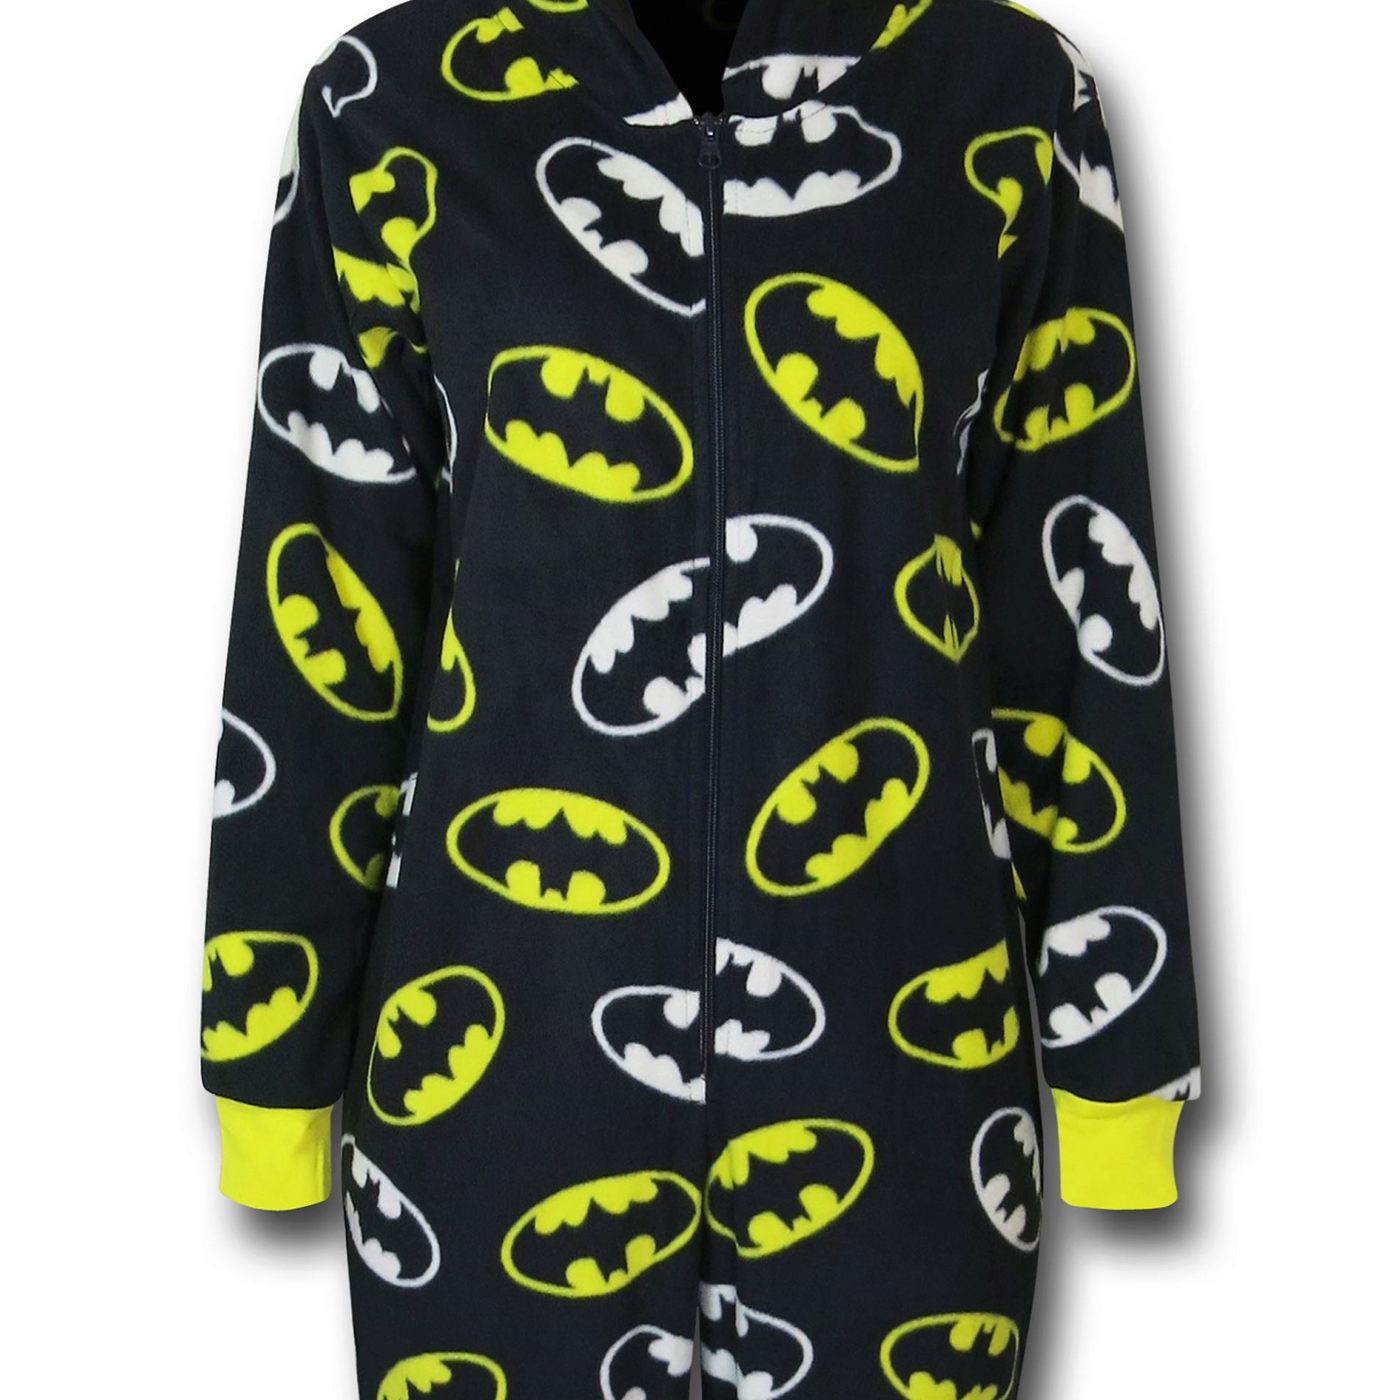 Batgirl Women's Union Suit